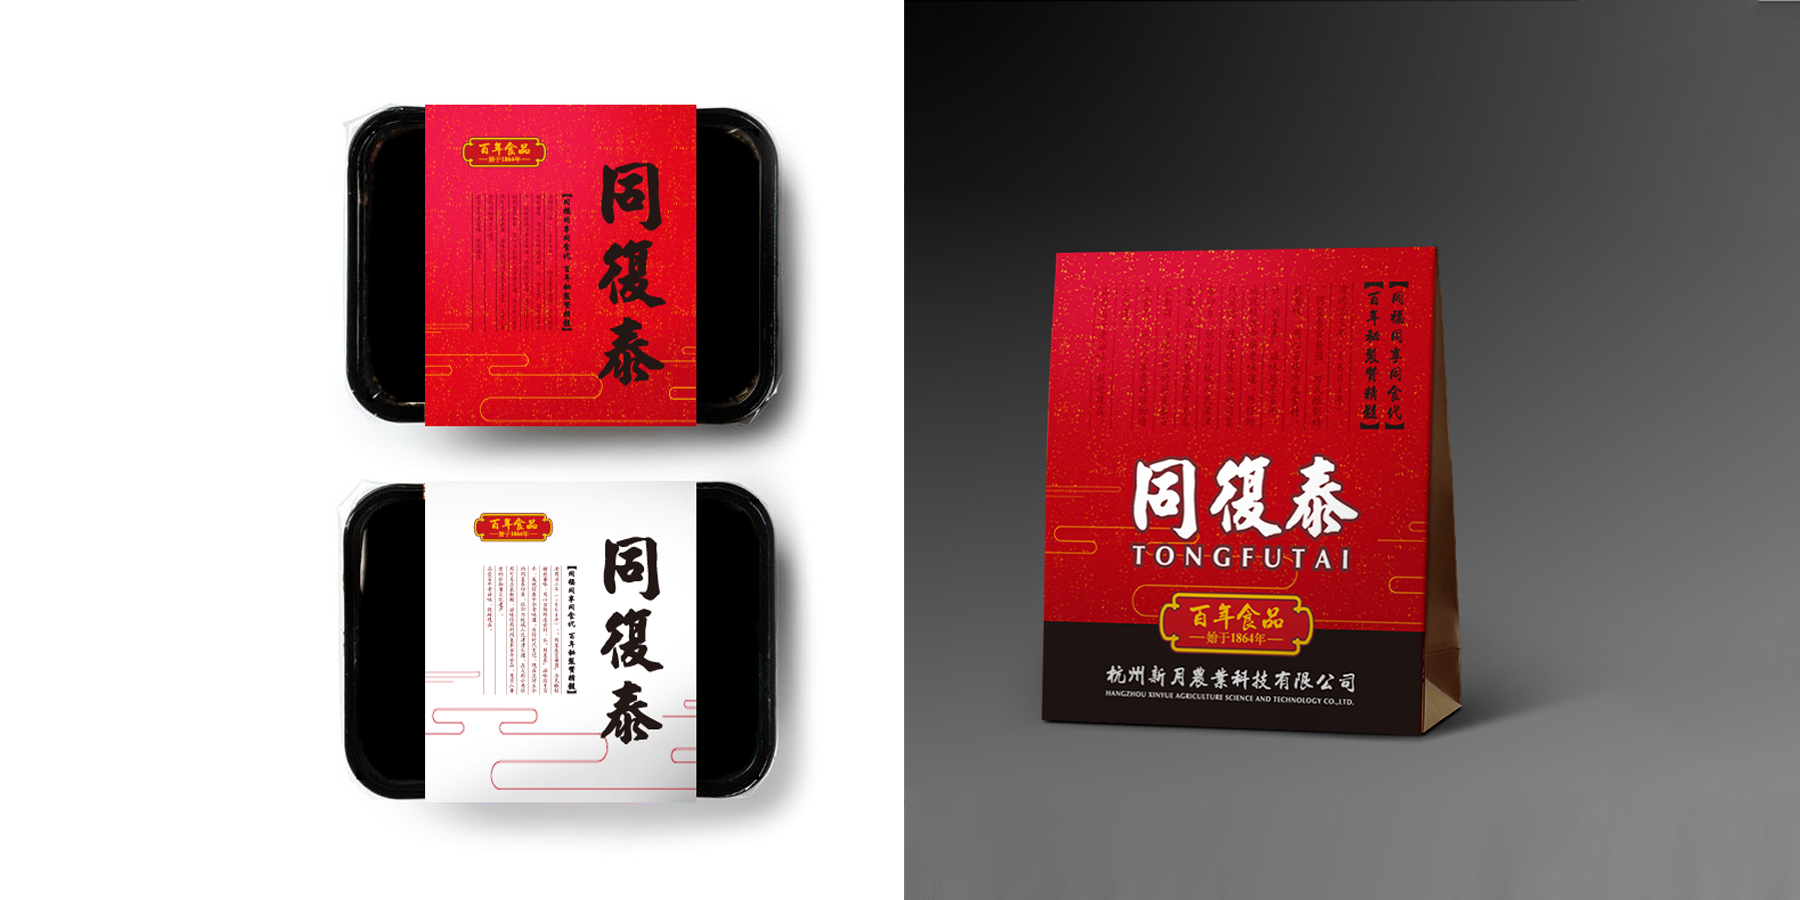 食品vi设计,餐饮vi设计,餐饮包装设计,杭州食品包装设计,杭州餐饮vi设计.jpg